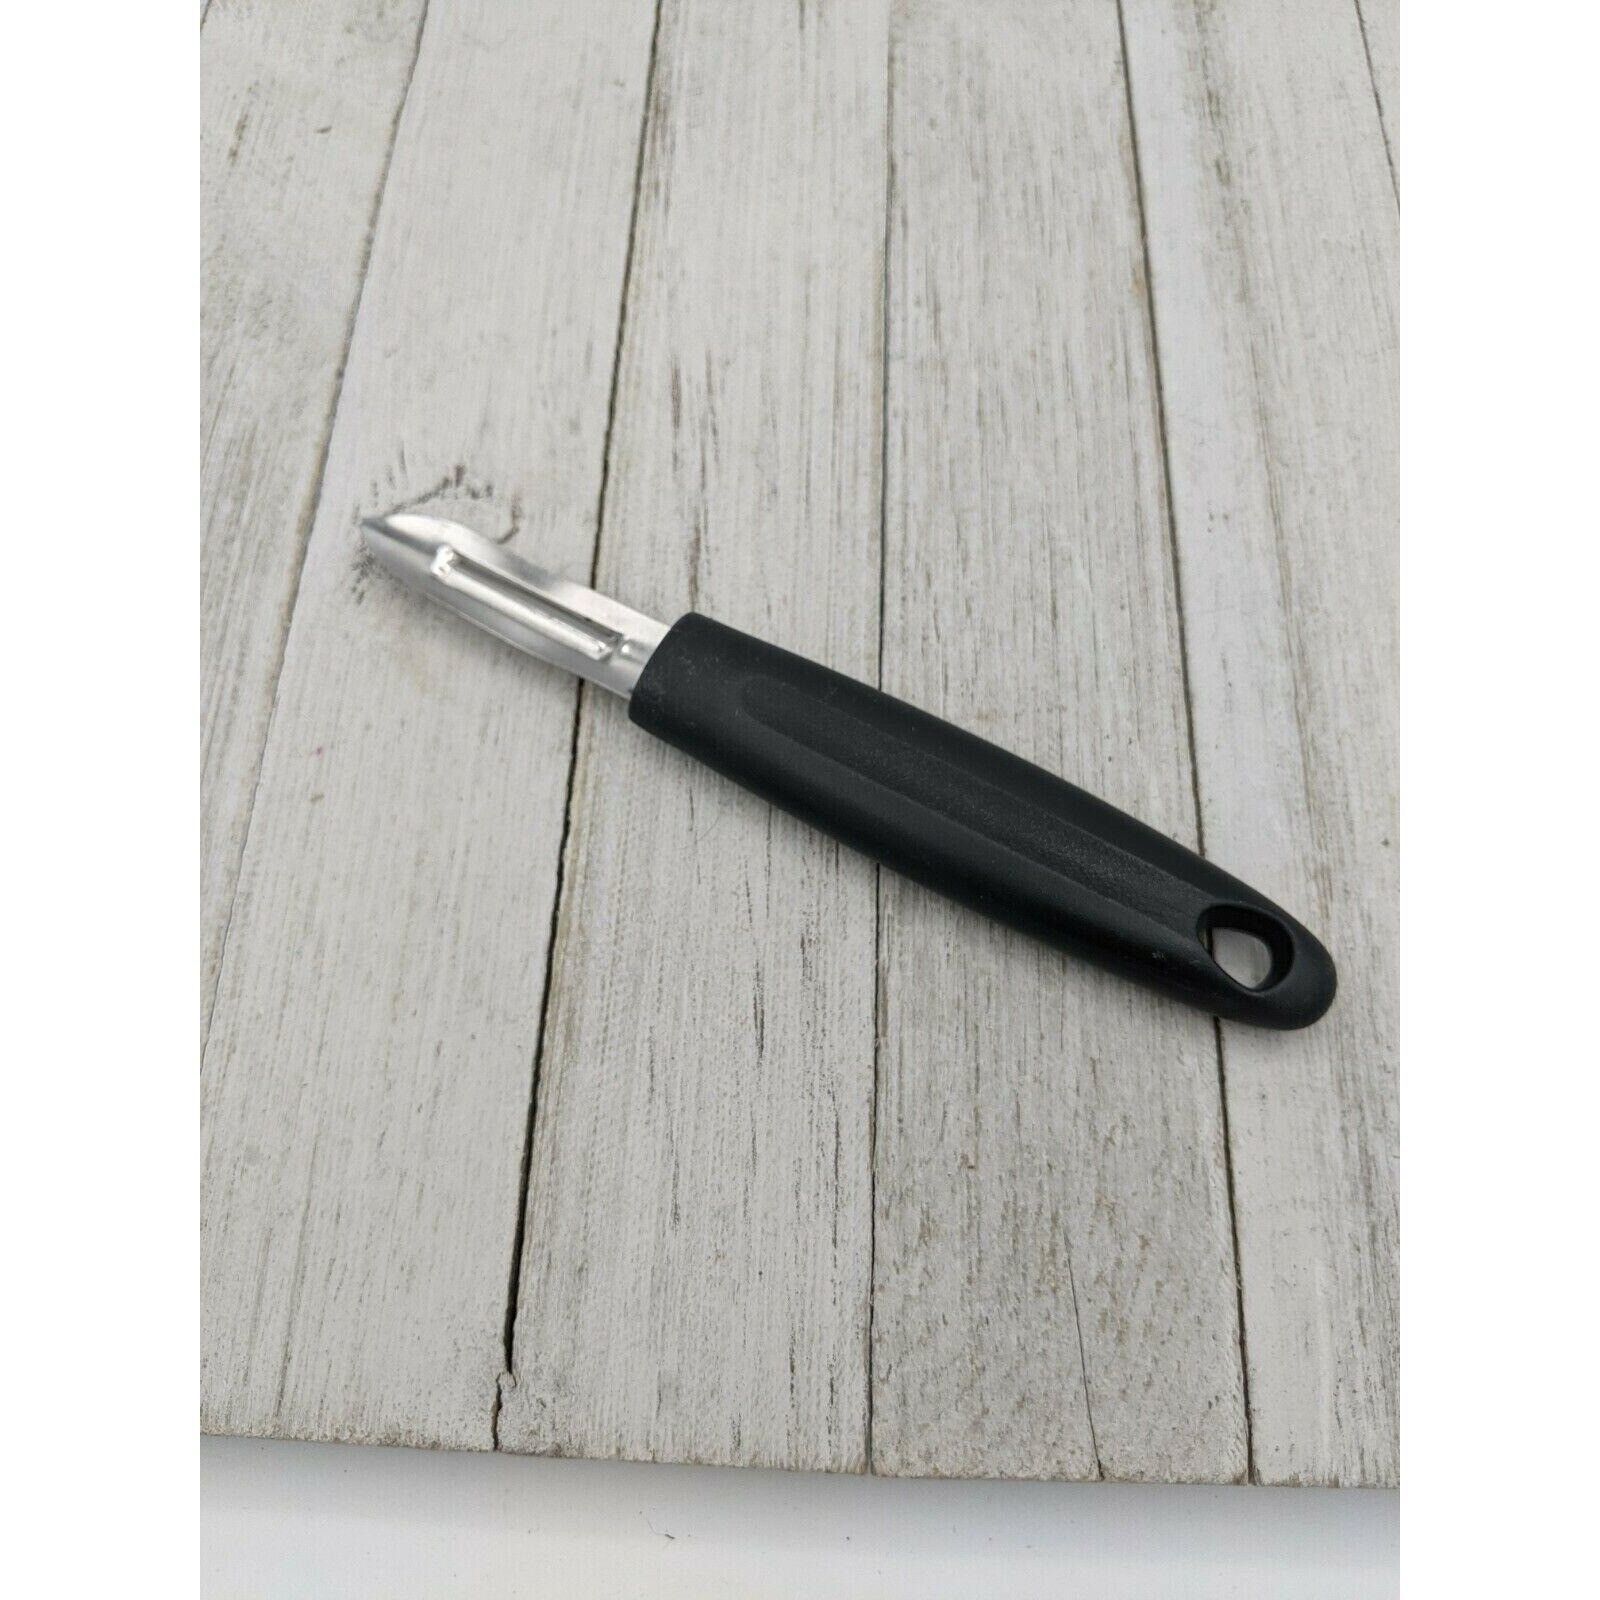 Primary image for Vegetable Peeler Peeling 7" Stainless Steel 2 1/2" Blade Black Handle